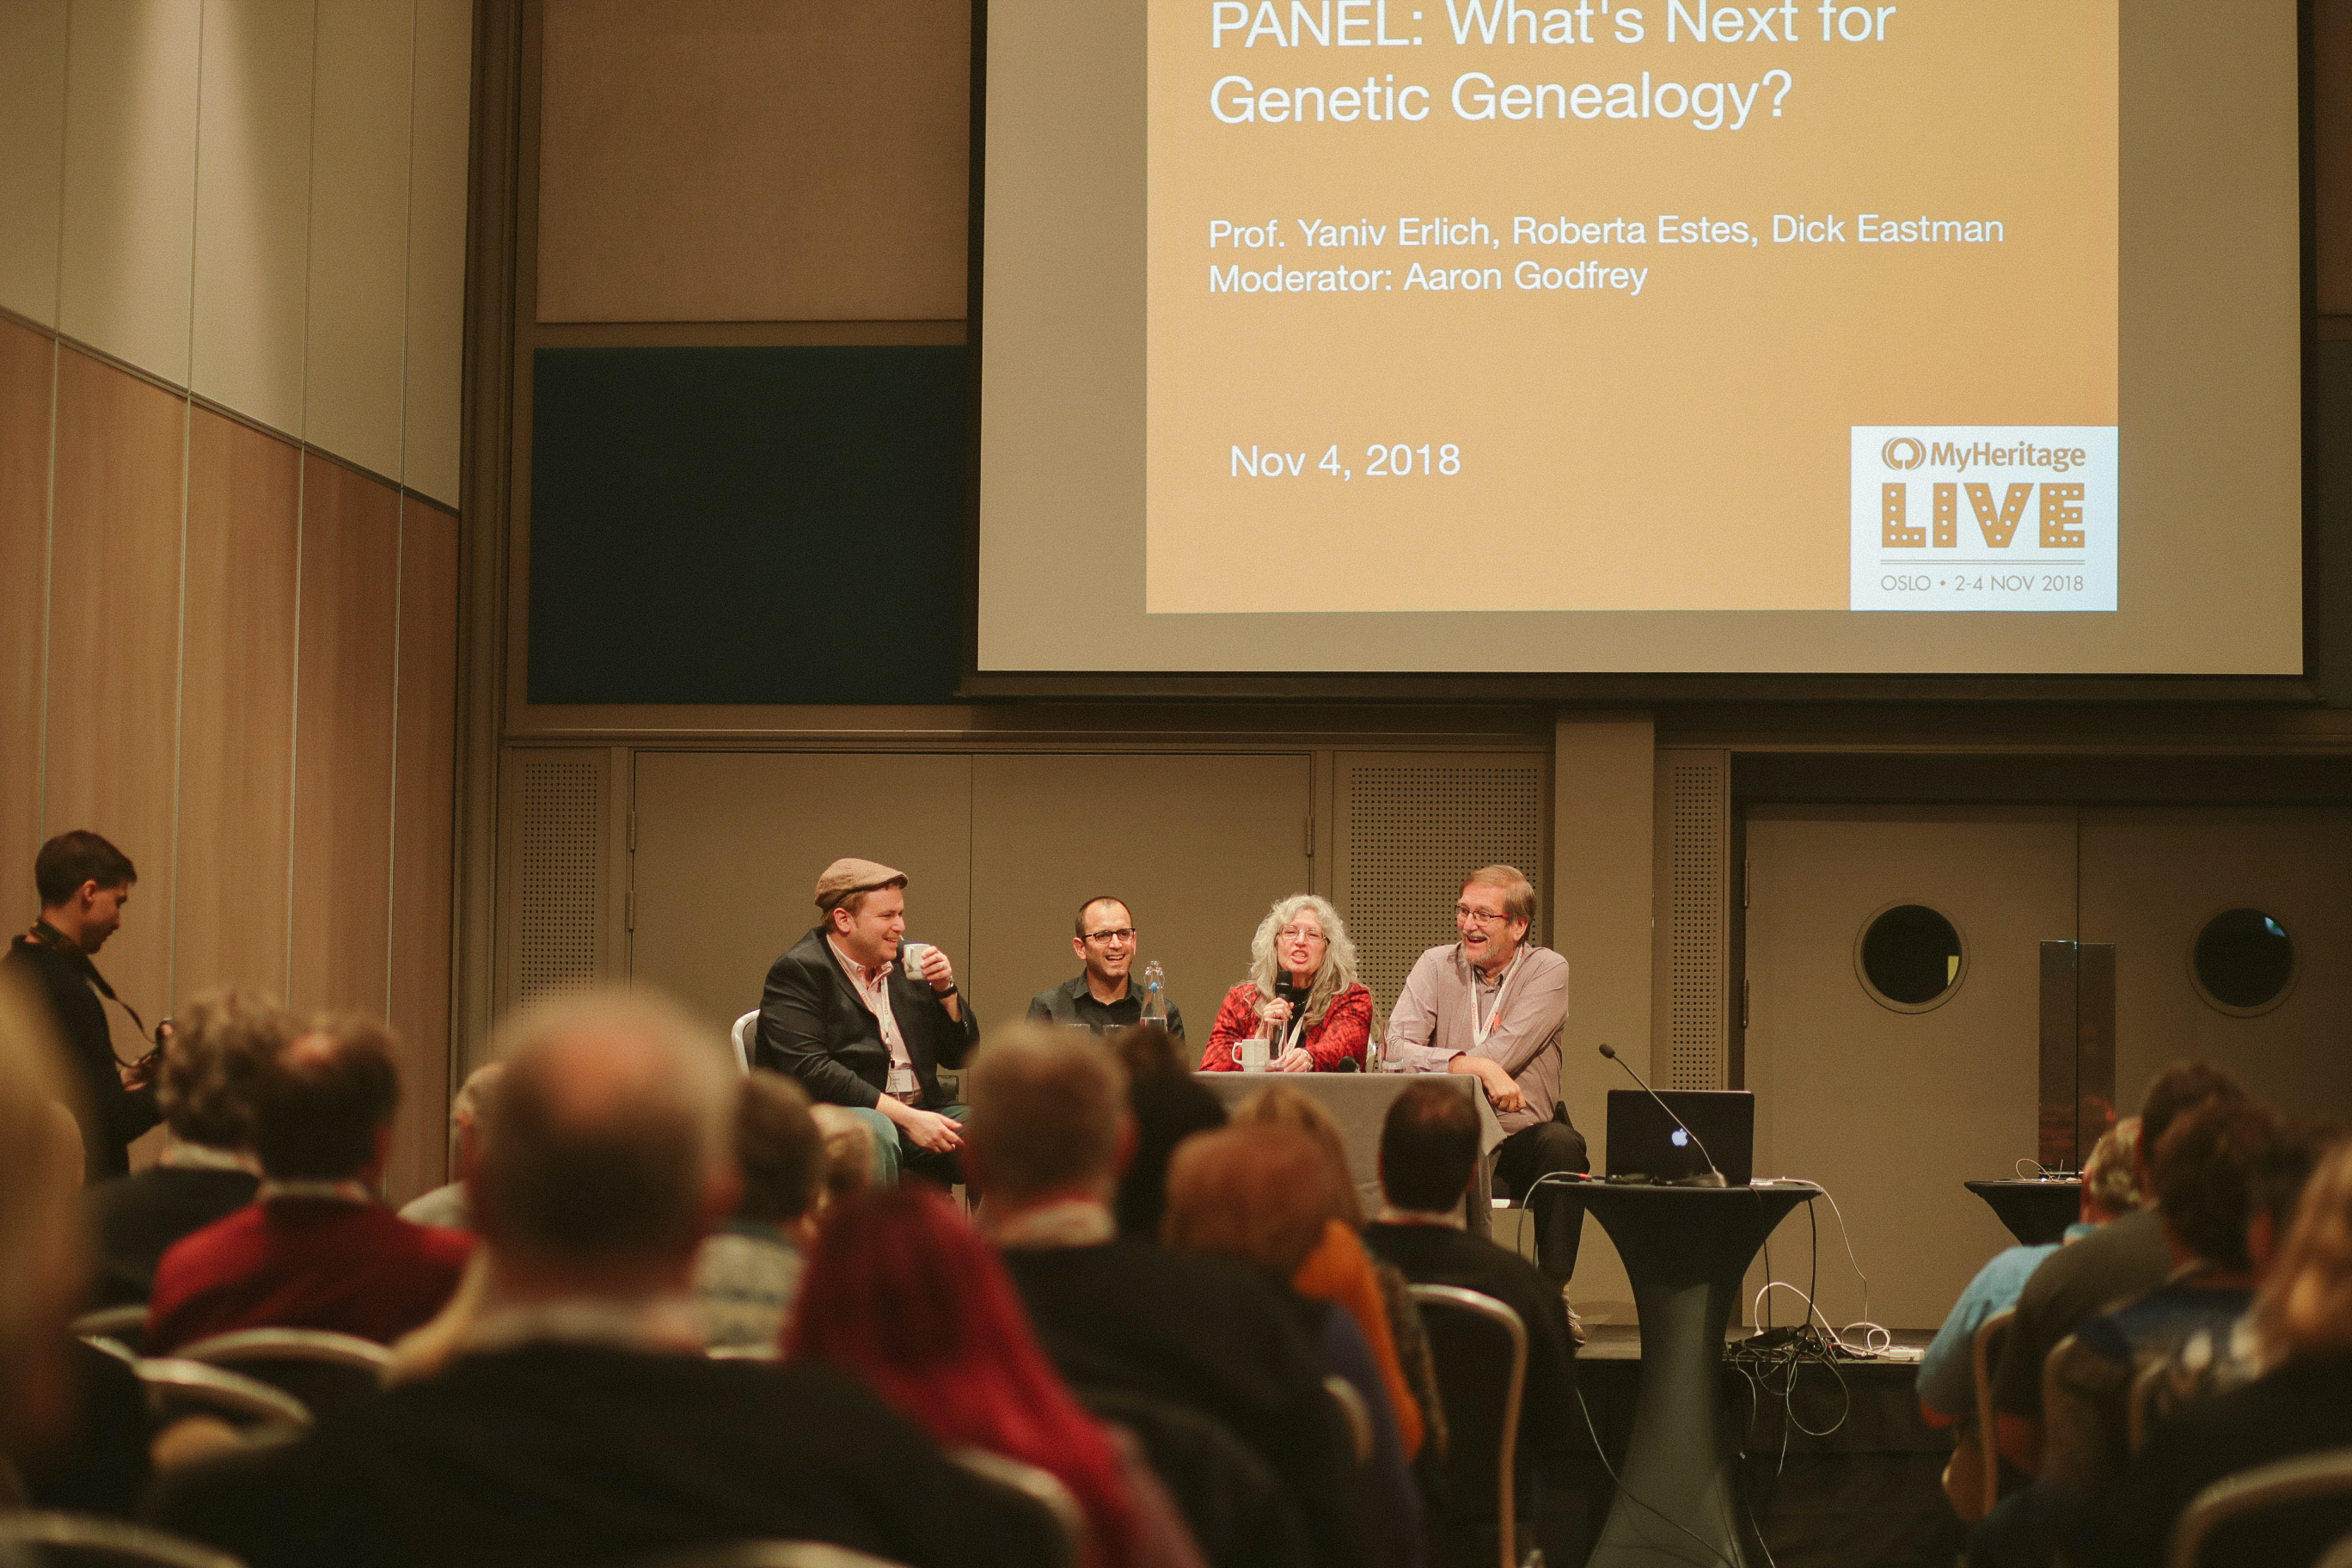 Panel om Vad kommer härnäst inom genetisk släktforskning med Aaron Godfrey, Dr. Yaniv Erlich, Roberta Estes, och Dick Eastman